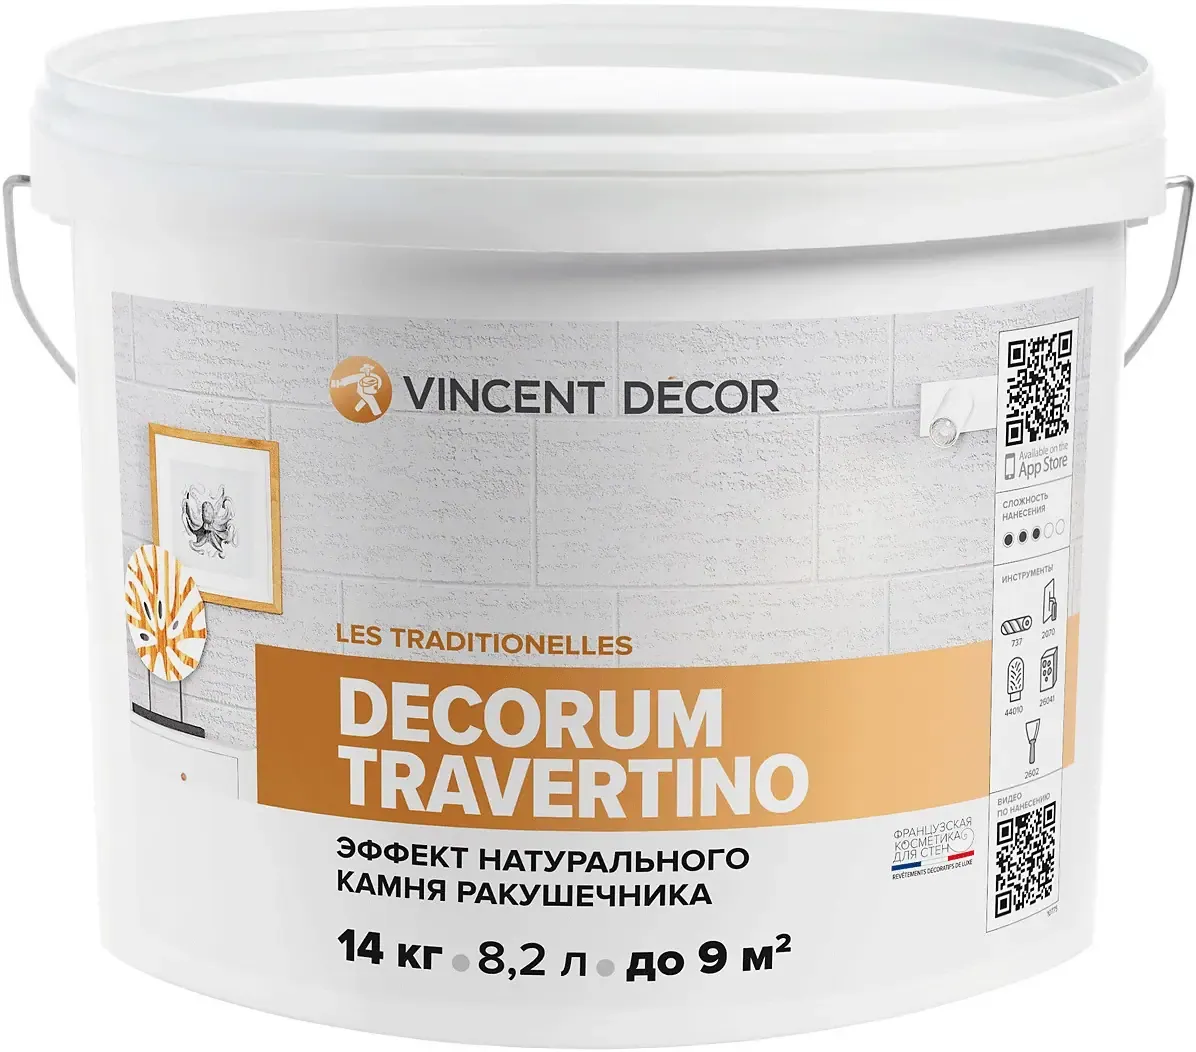 Декоративная штукатурка с эффектом натурального камня Vincent Decor Decorum Travertino 14 кг